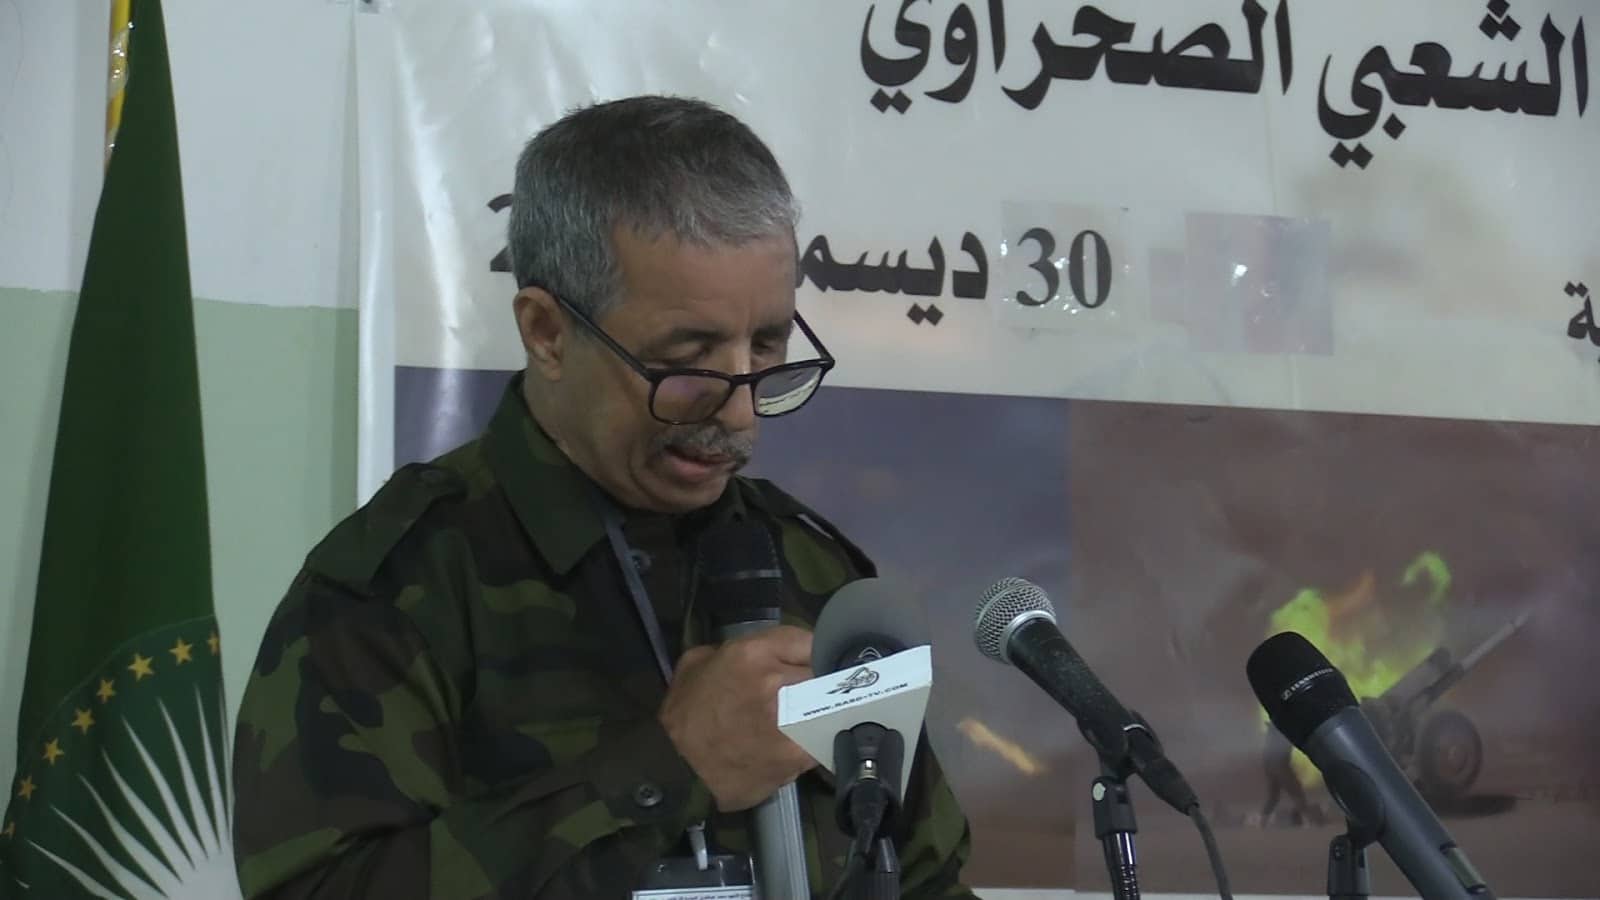 رئيس الأركان العامة للجيش الصحراوي: "المغرب يسعى لإبادة الشعب الصحراوي كما حاول عام 1975" watanserb.com